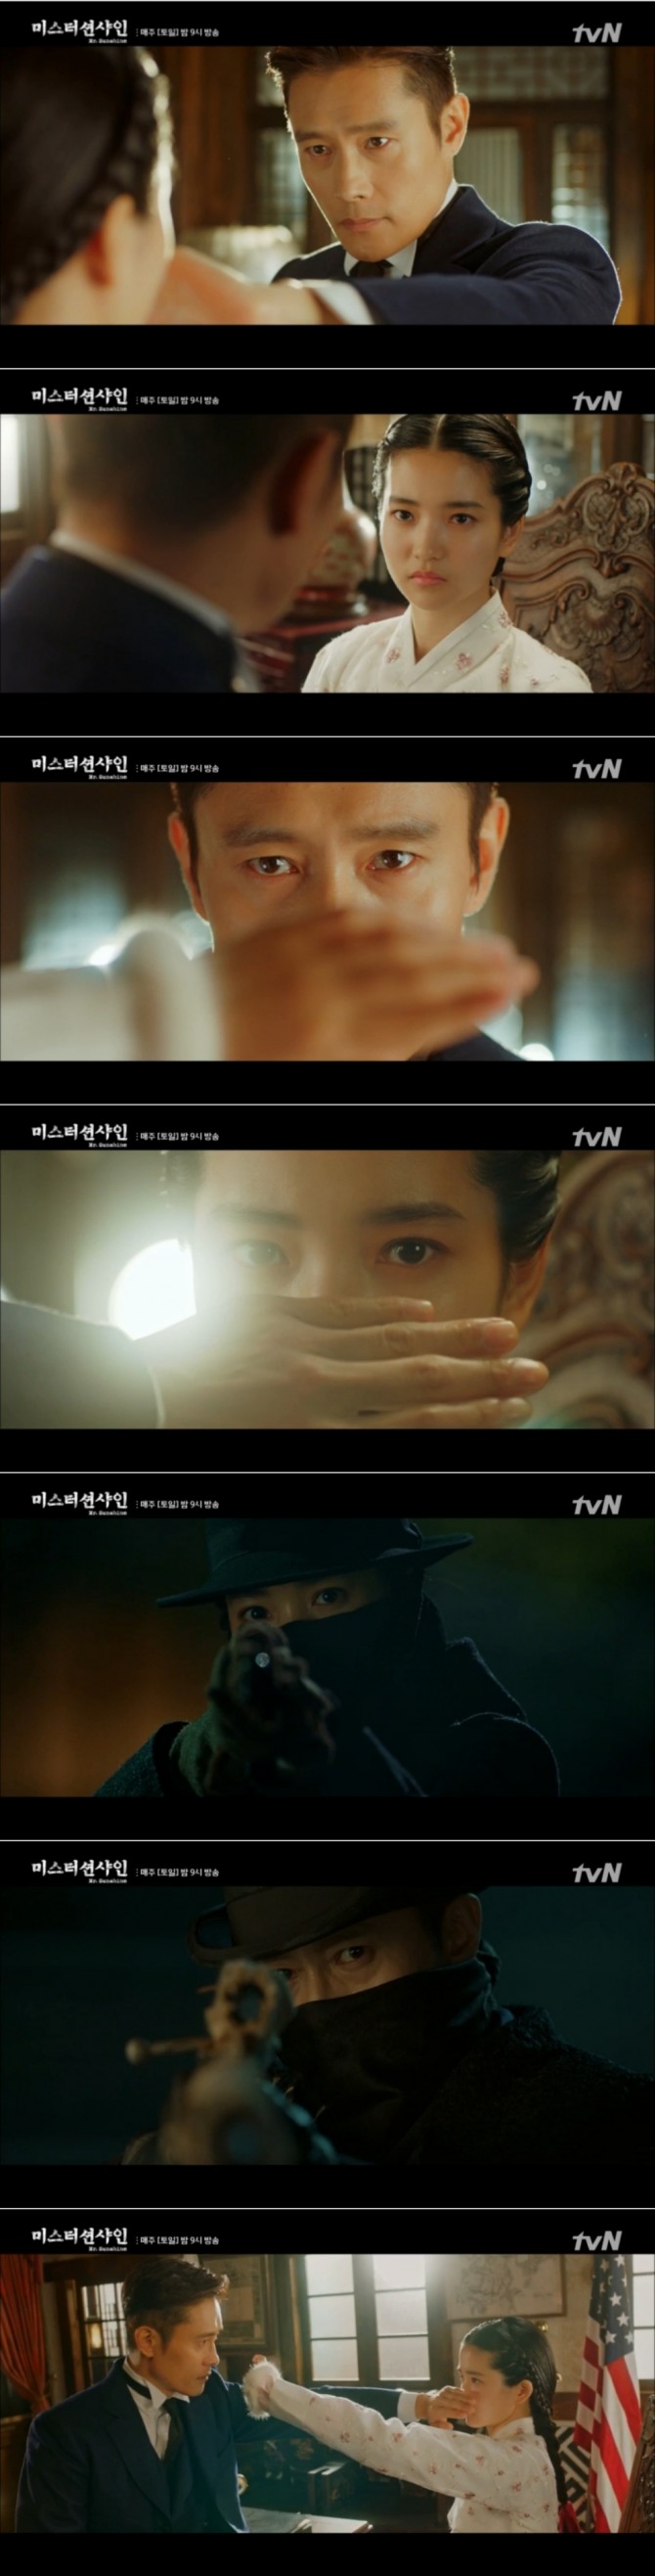 지난 8일 방송된 tvN 토일드라마 '미스터 션샤인'에서는 최유진(이병헌)과 고애신(김태리)이 지붕위에서 서로에게 총을 겨누었던 사이였음을 확인하는 층격 반전이 그려졌다. 사진=tvN 방송 캡처